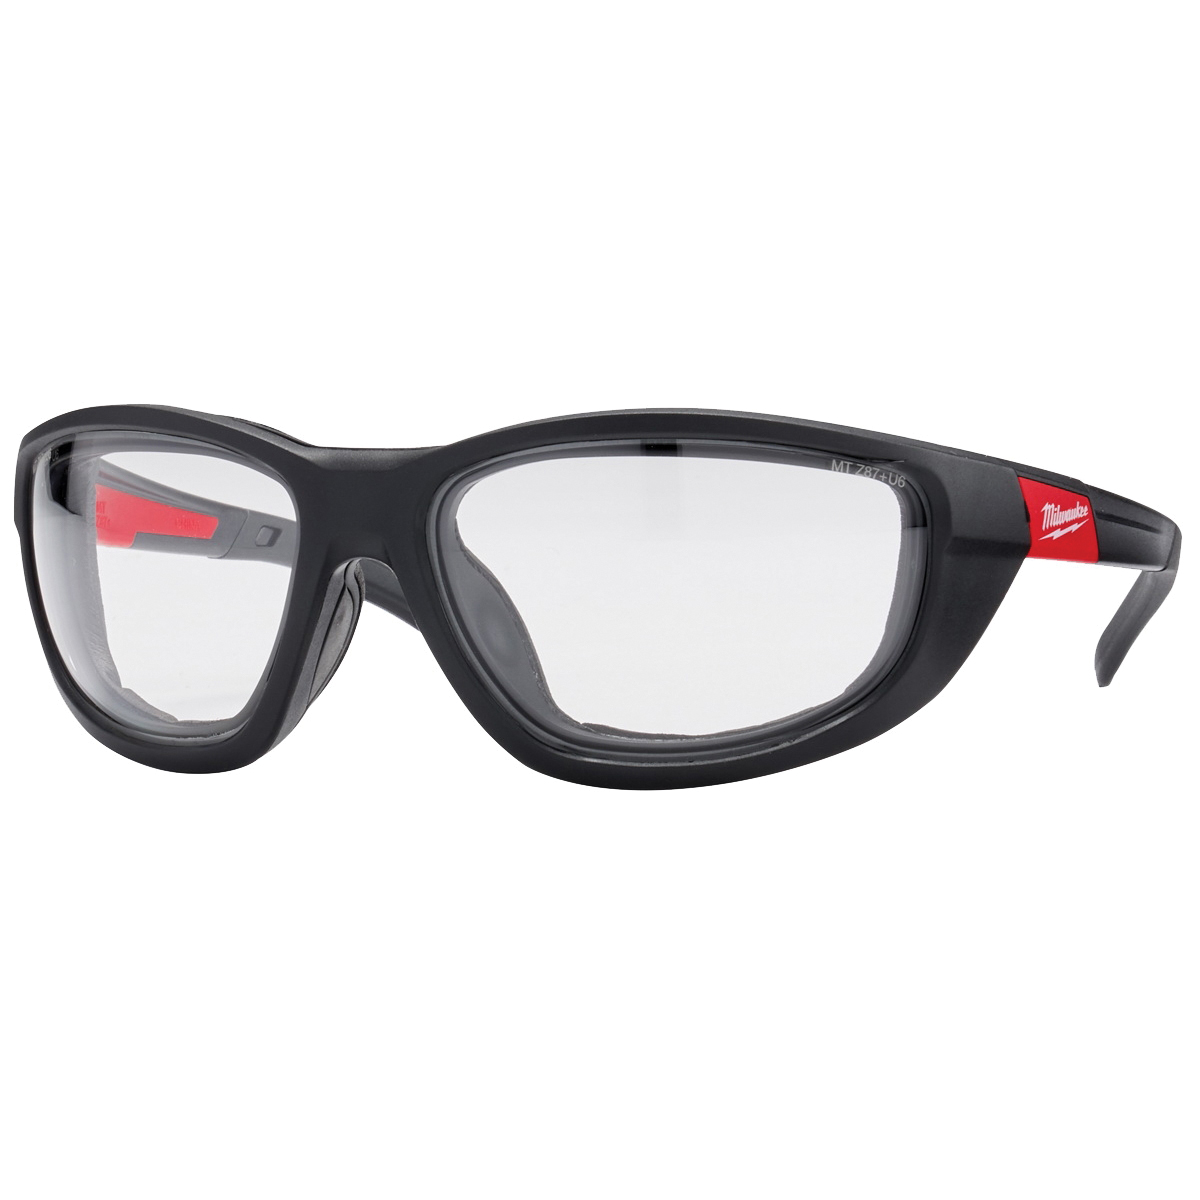 Milwaukee 48-73-2040 Polarized Performance Safety Glasses